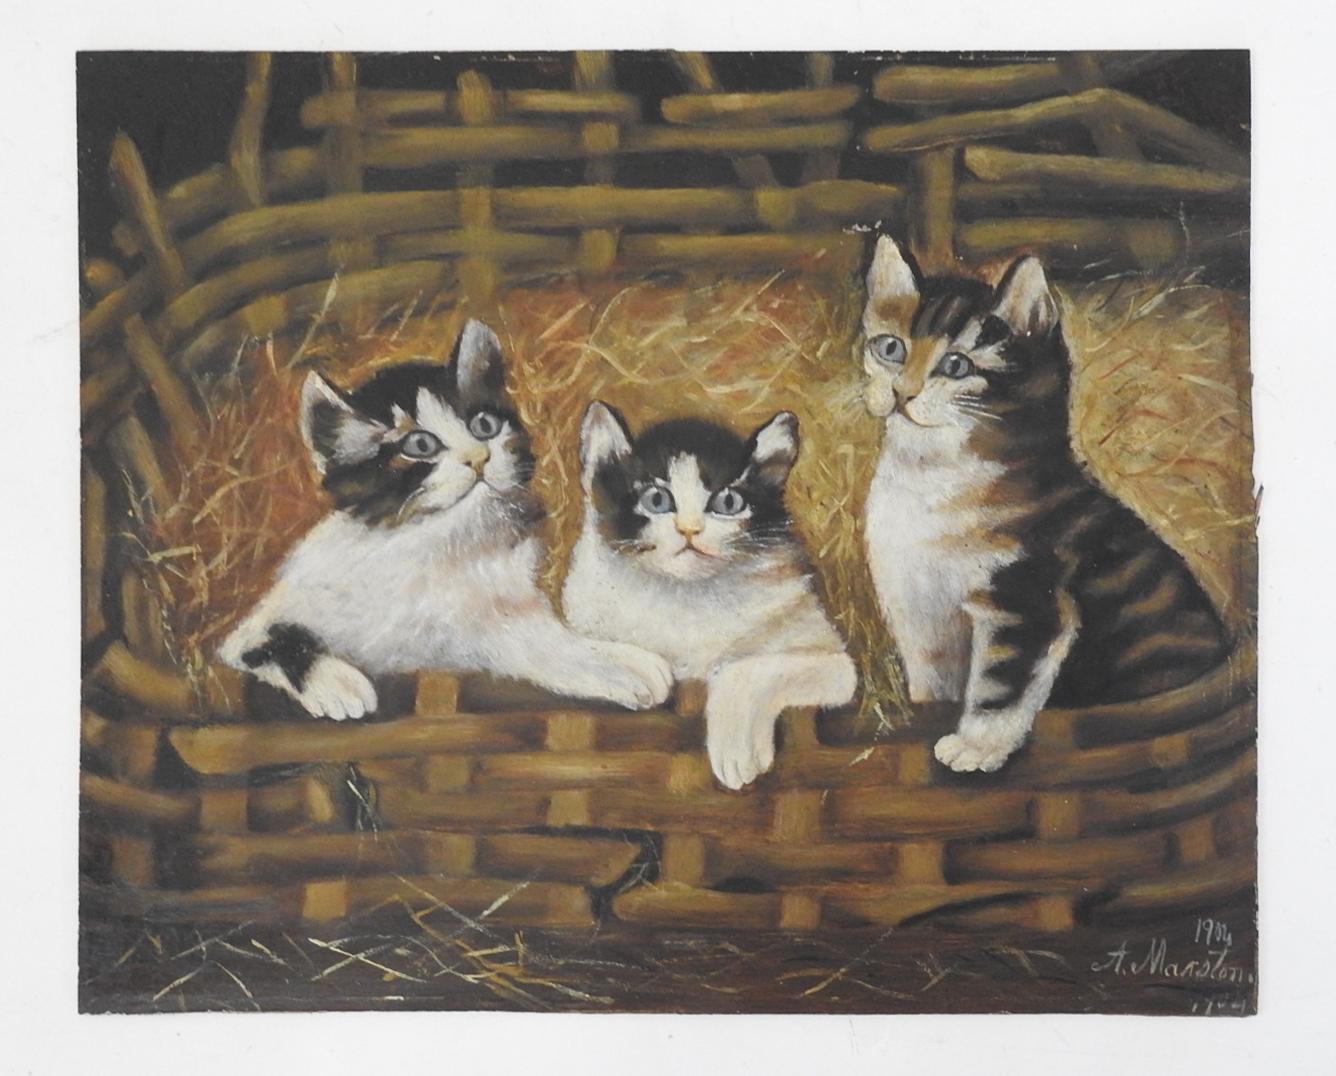 Arte Antiques 1904 huile sur panneau d'artiste peinture d'art populaire de trois chatons dans un vieux panier.  Signé A. Marston et daté 1904 dans le coin inférieur droit.  Note sur l'ancien support (Wendell Marston Waitt) Peint par sa grand-mère